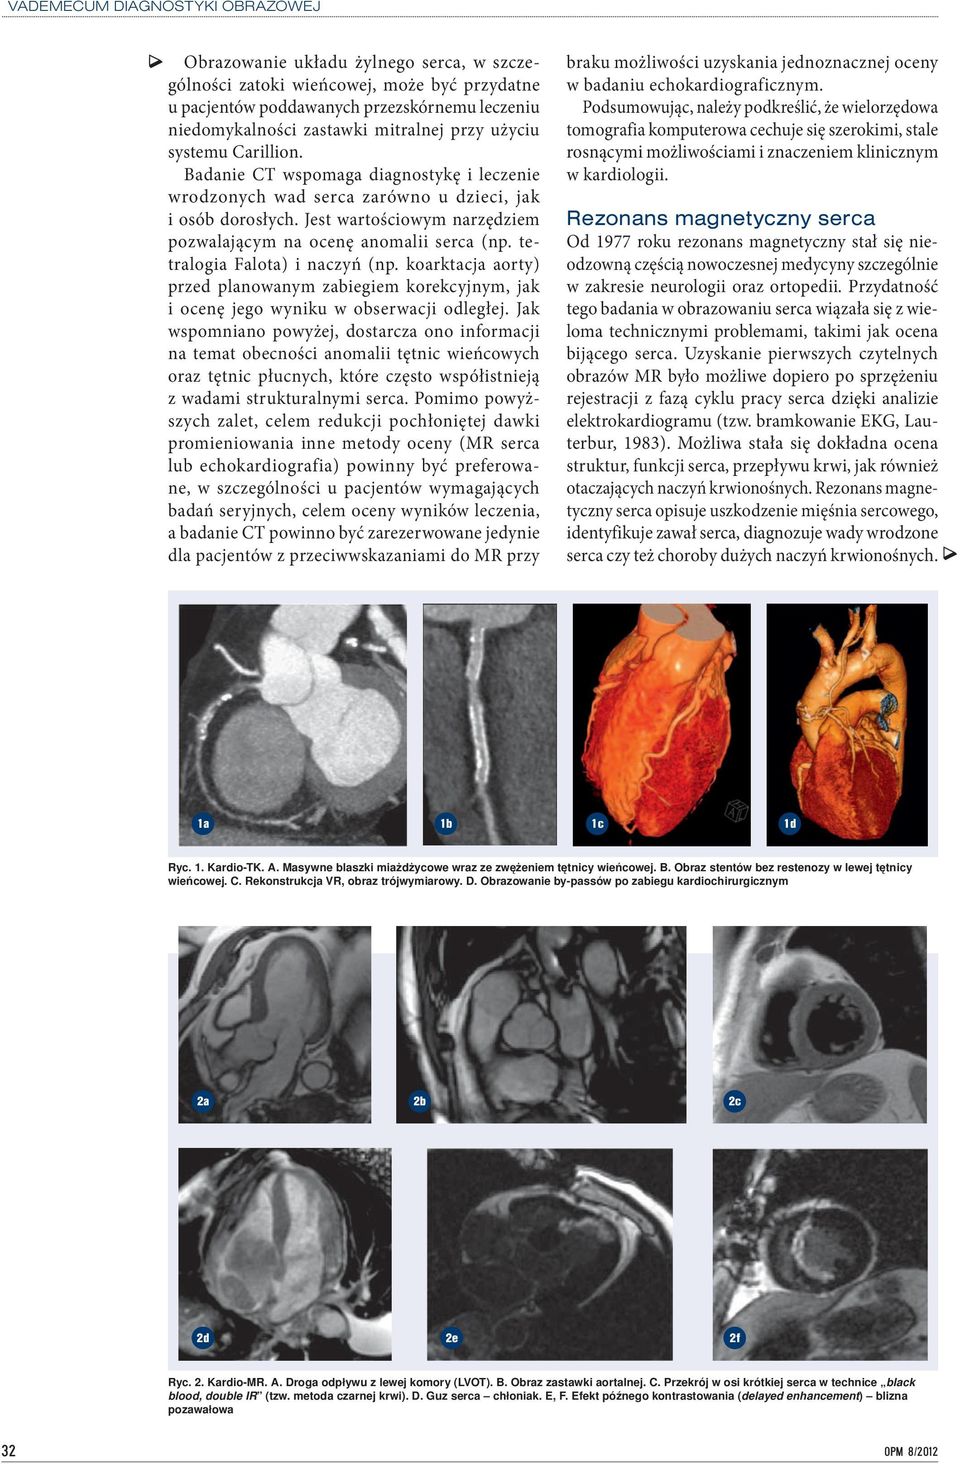 tetralogia Falota) i naczyń (np. koarktacja aorty) przed planowanym zabiegiem korekcyjnym, jak i ocenę jego wyniku w obserwacji odległej.